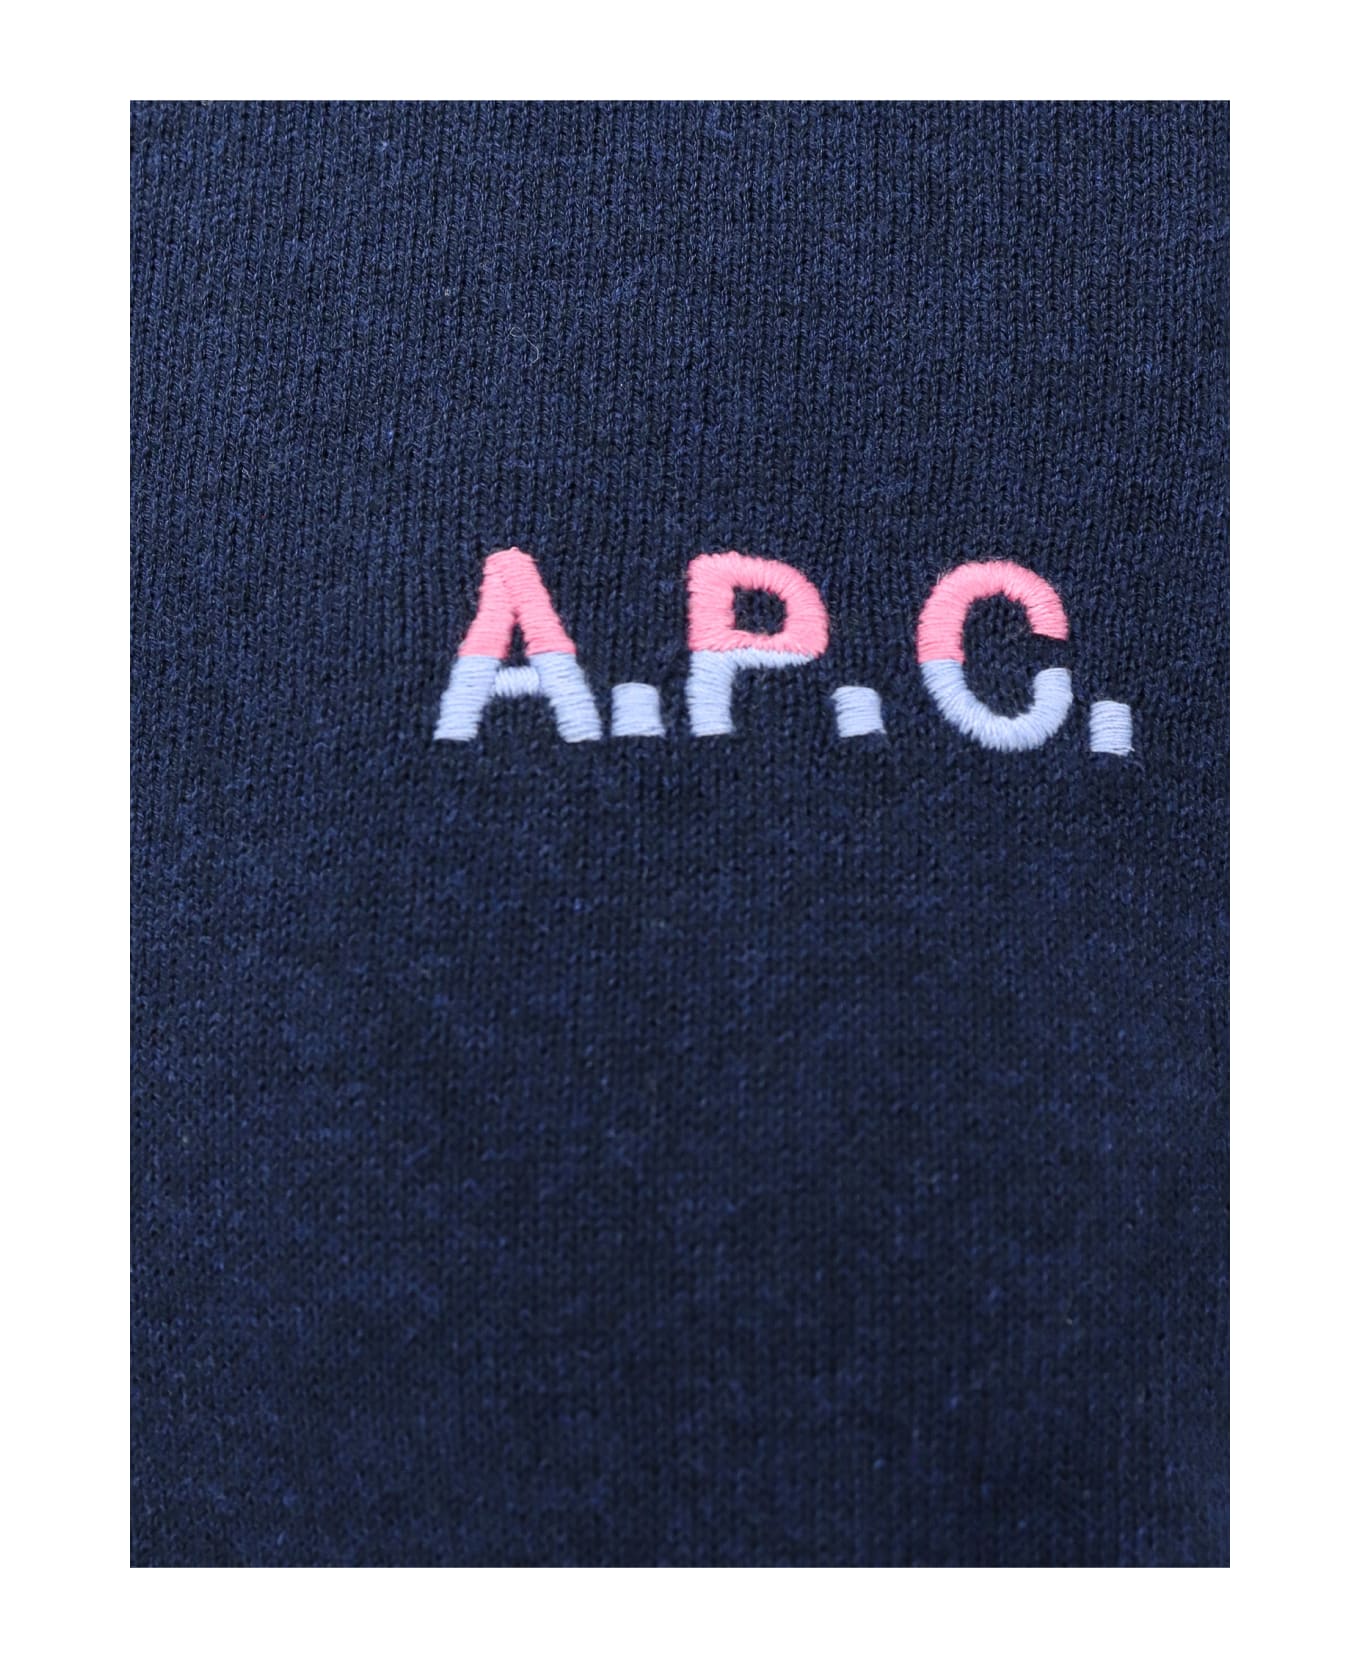 A.P.C. Sweater - Blue